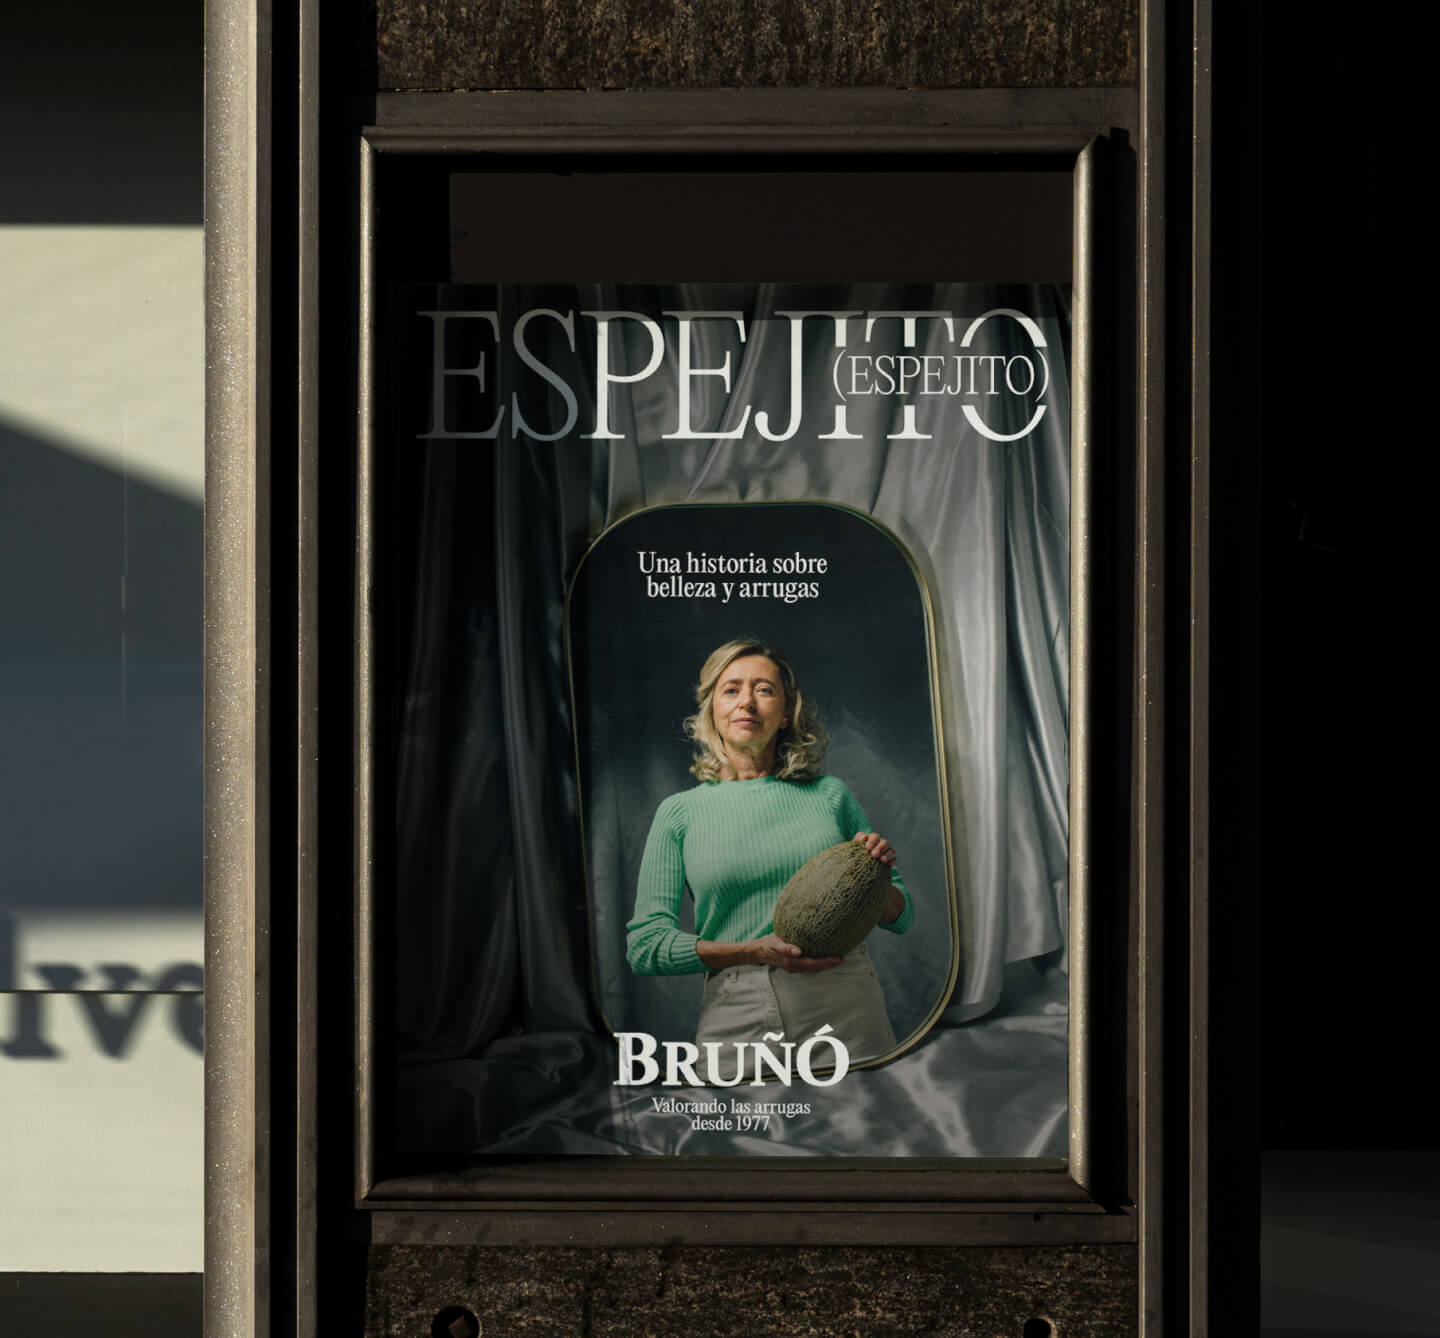 Cartel publicitario del vídeo Espejito espejito con mujer en el espejo sosteniendo un melón